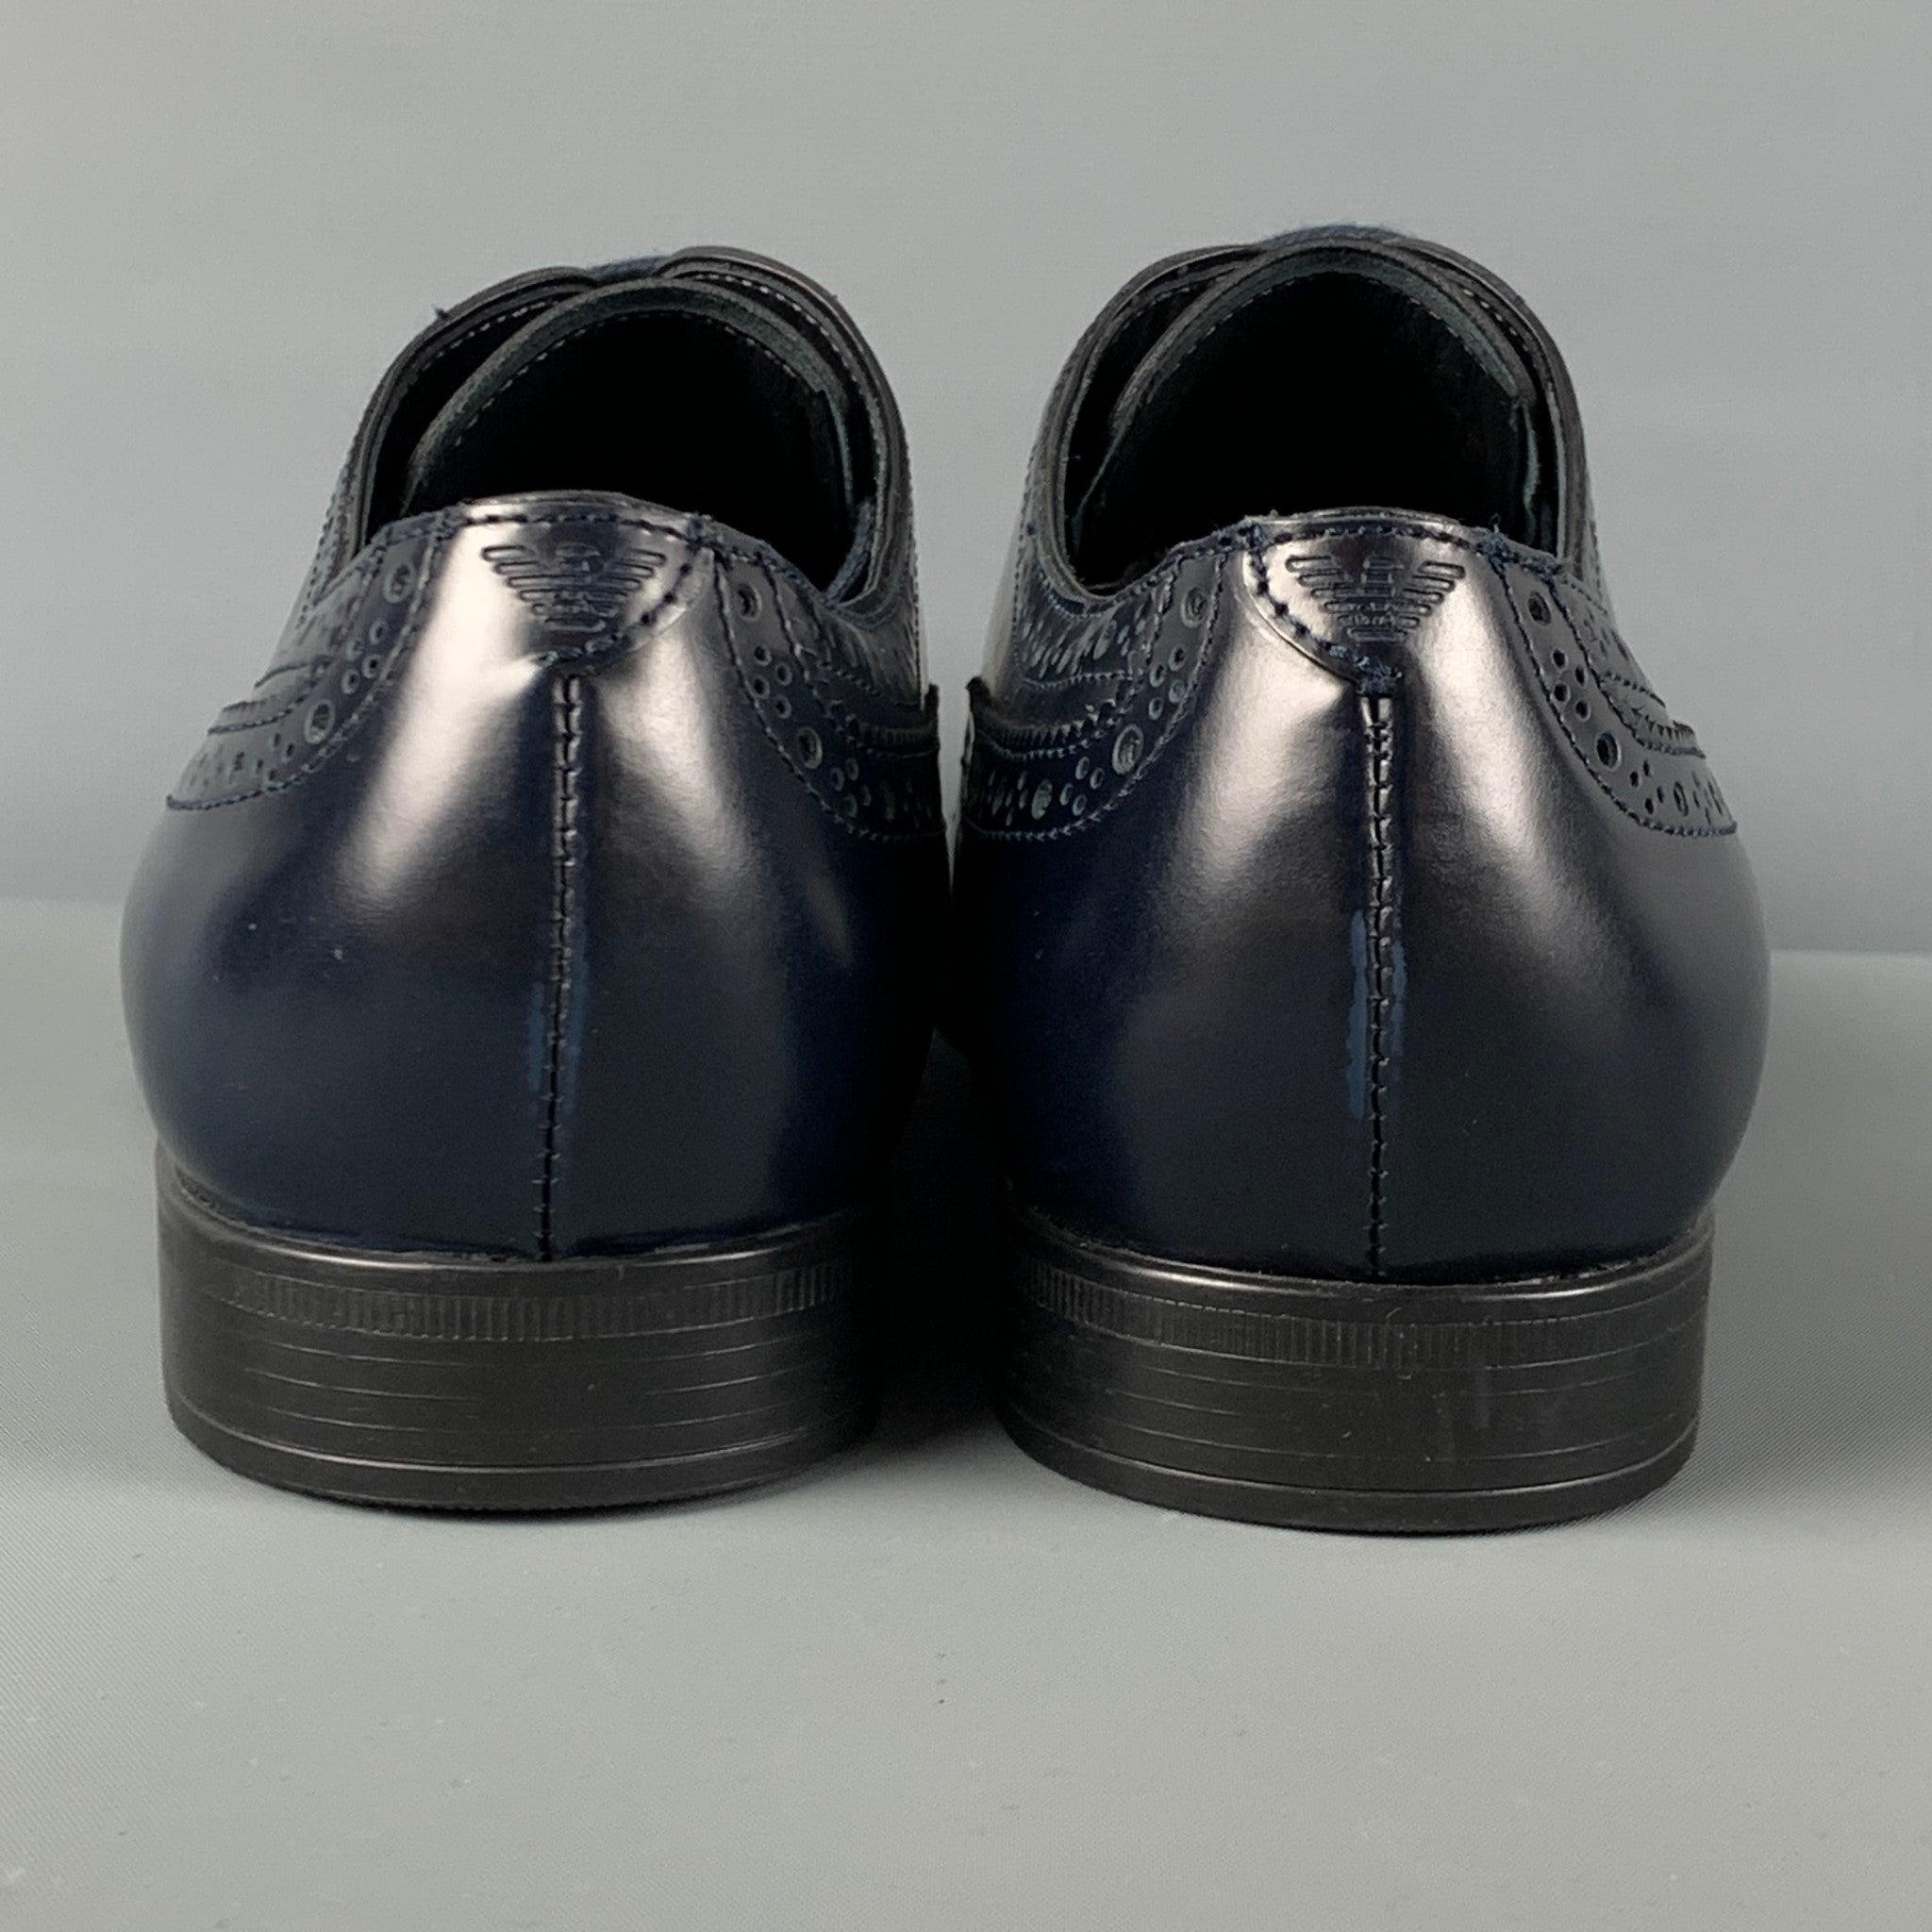 EMPORIO ARMANI - Chaussures à lacets en cuir perforé bleu marine, taille 9 1